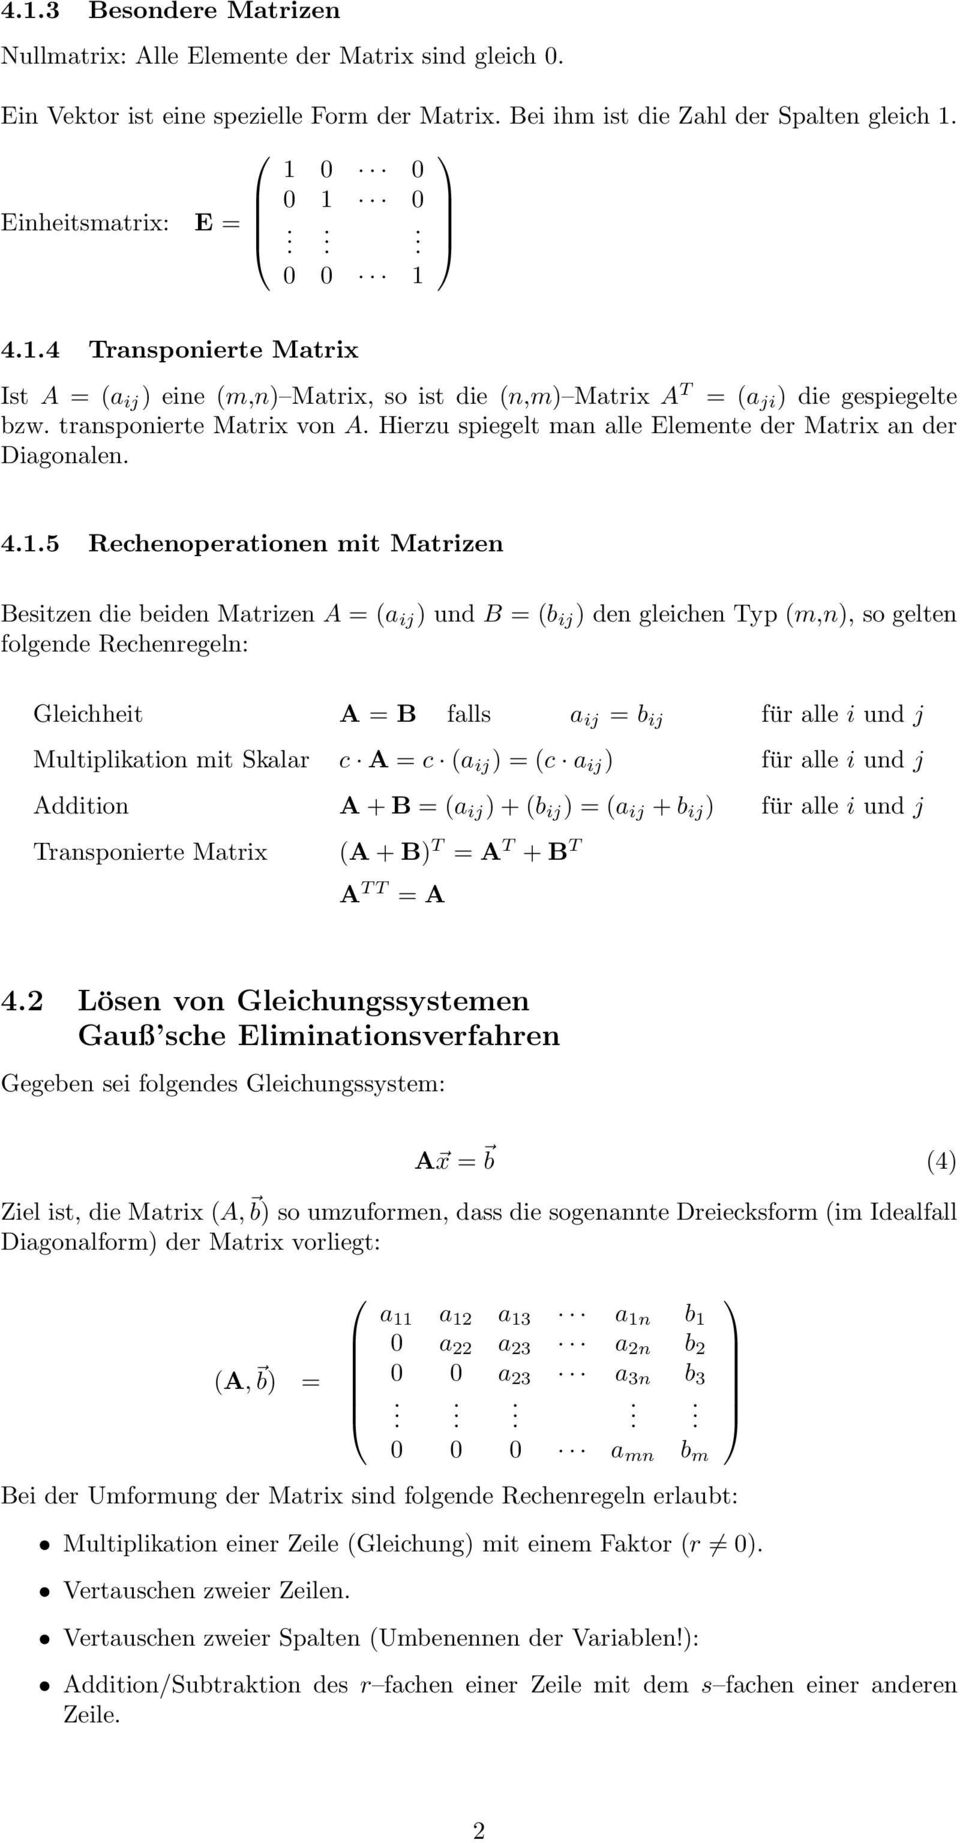 Rechenoperationen mit Matrizen Besitzen die beiden Matrizen a ij und B = b ij den gleichen Typ m,n, so gelten folgende Rechenregeln: Gleichheit B falls a ij = b ij für alle i und j Multiplikation mit